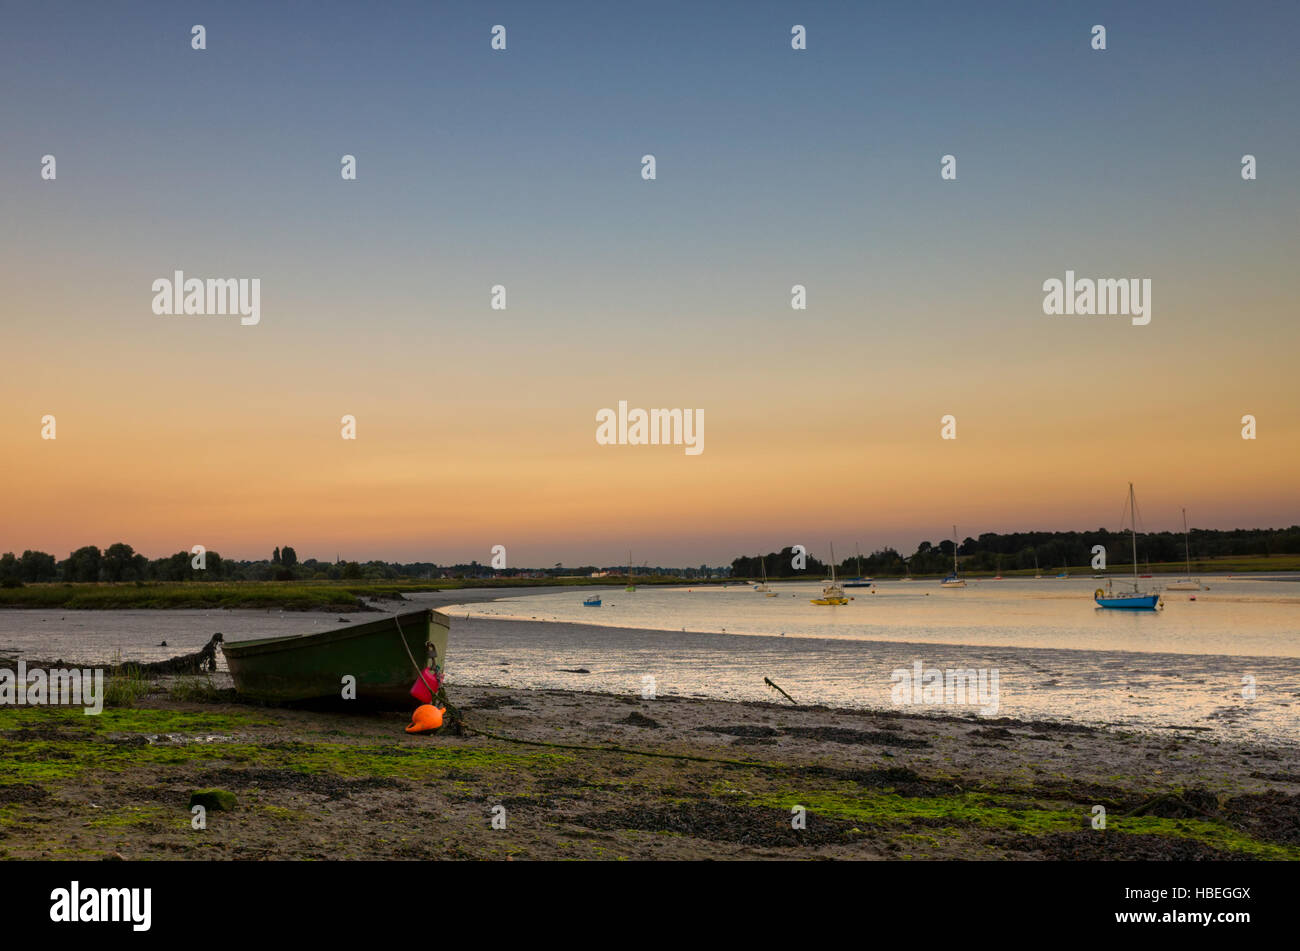 River Deben Woodbridge, England. Ein kleines Boot geerdet am Ufer des Flusses Deben in der Dämmerung. Der Himmel ist blau mit orange knapp über dem Horizont, der auf dem Wasser spiegelt. Dieses Foto wurde kurz nach dem Sonnenuntergang, das macht ein schönes weiches Licht während der frühen Dämmerung genommen. Stockfoto